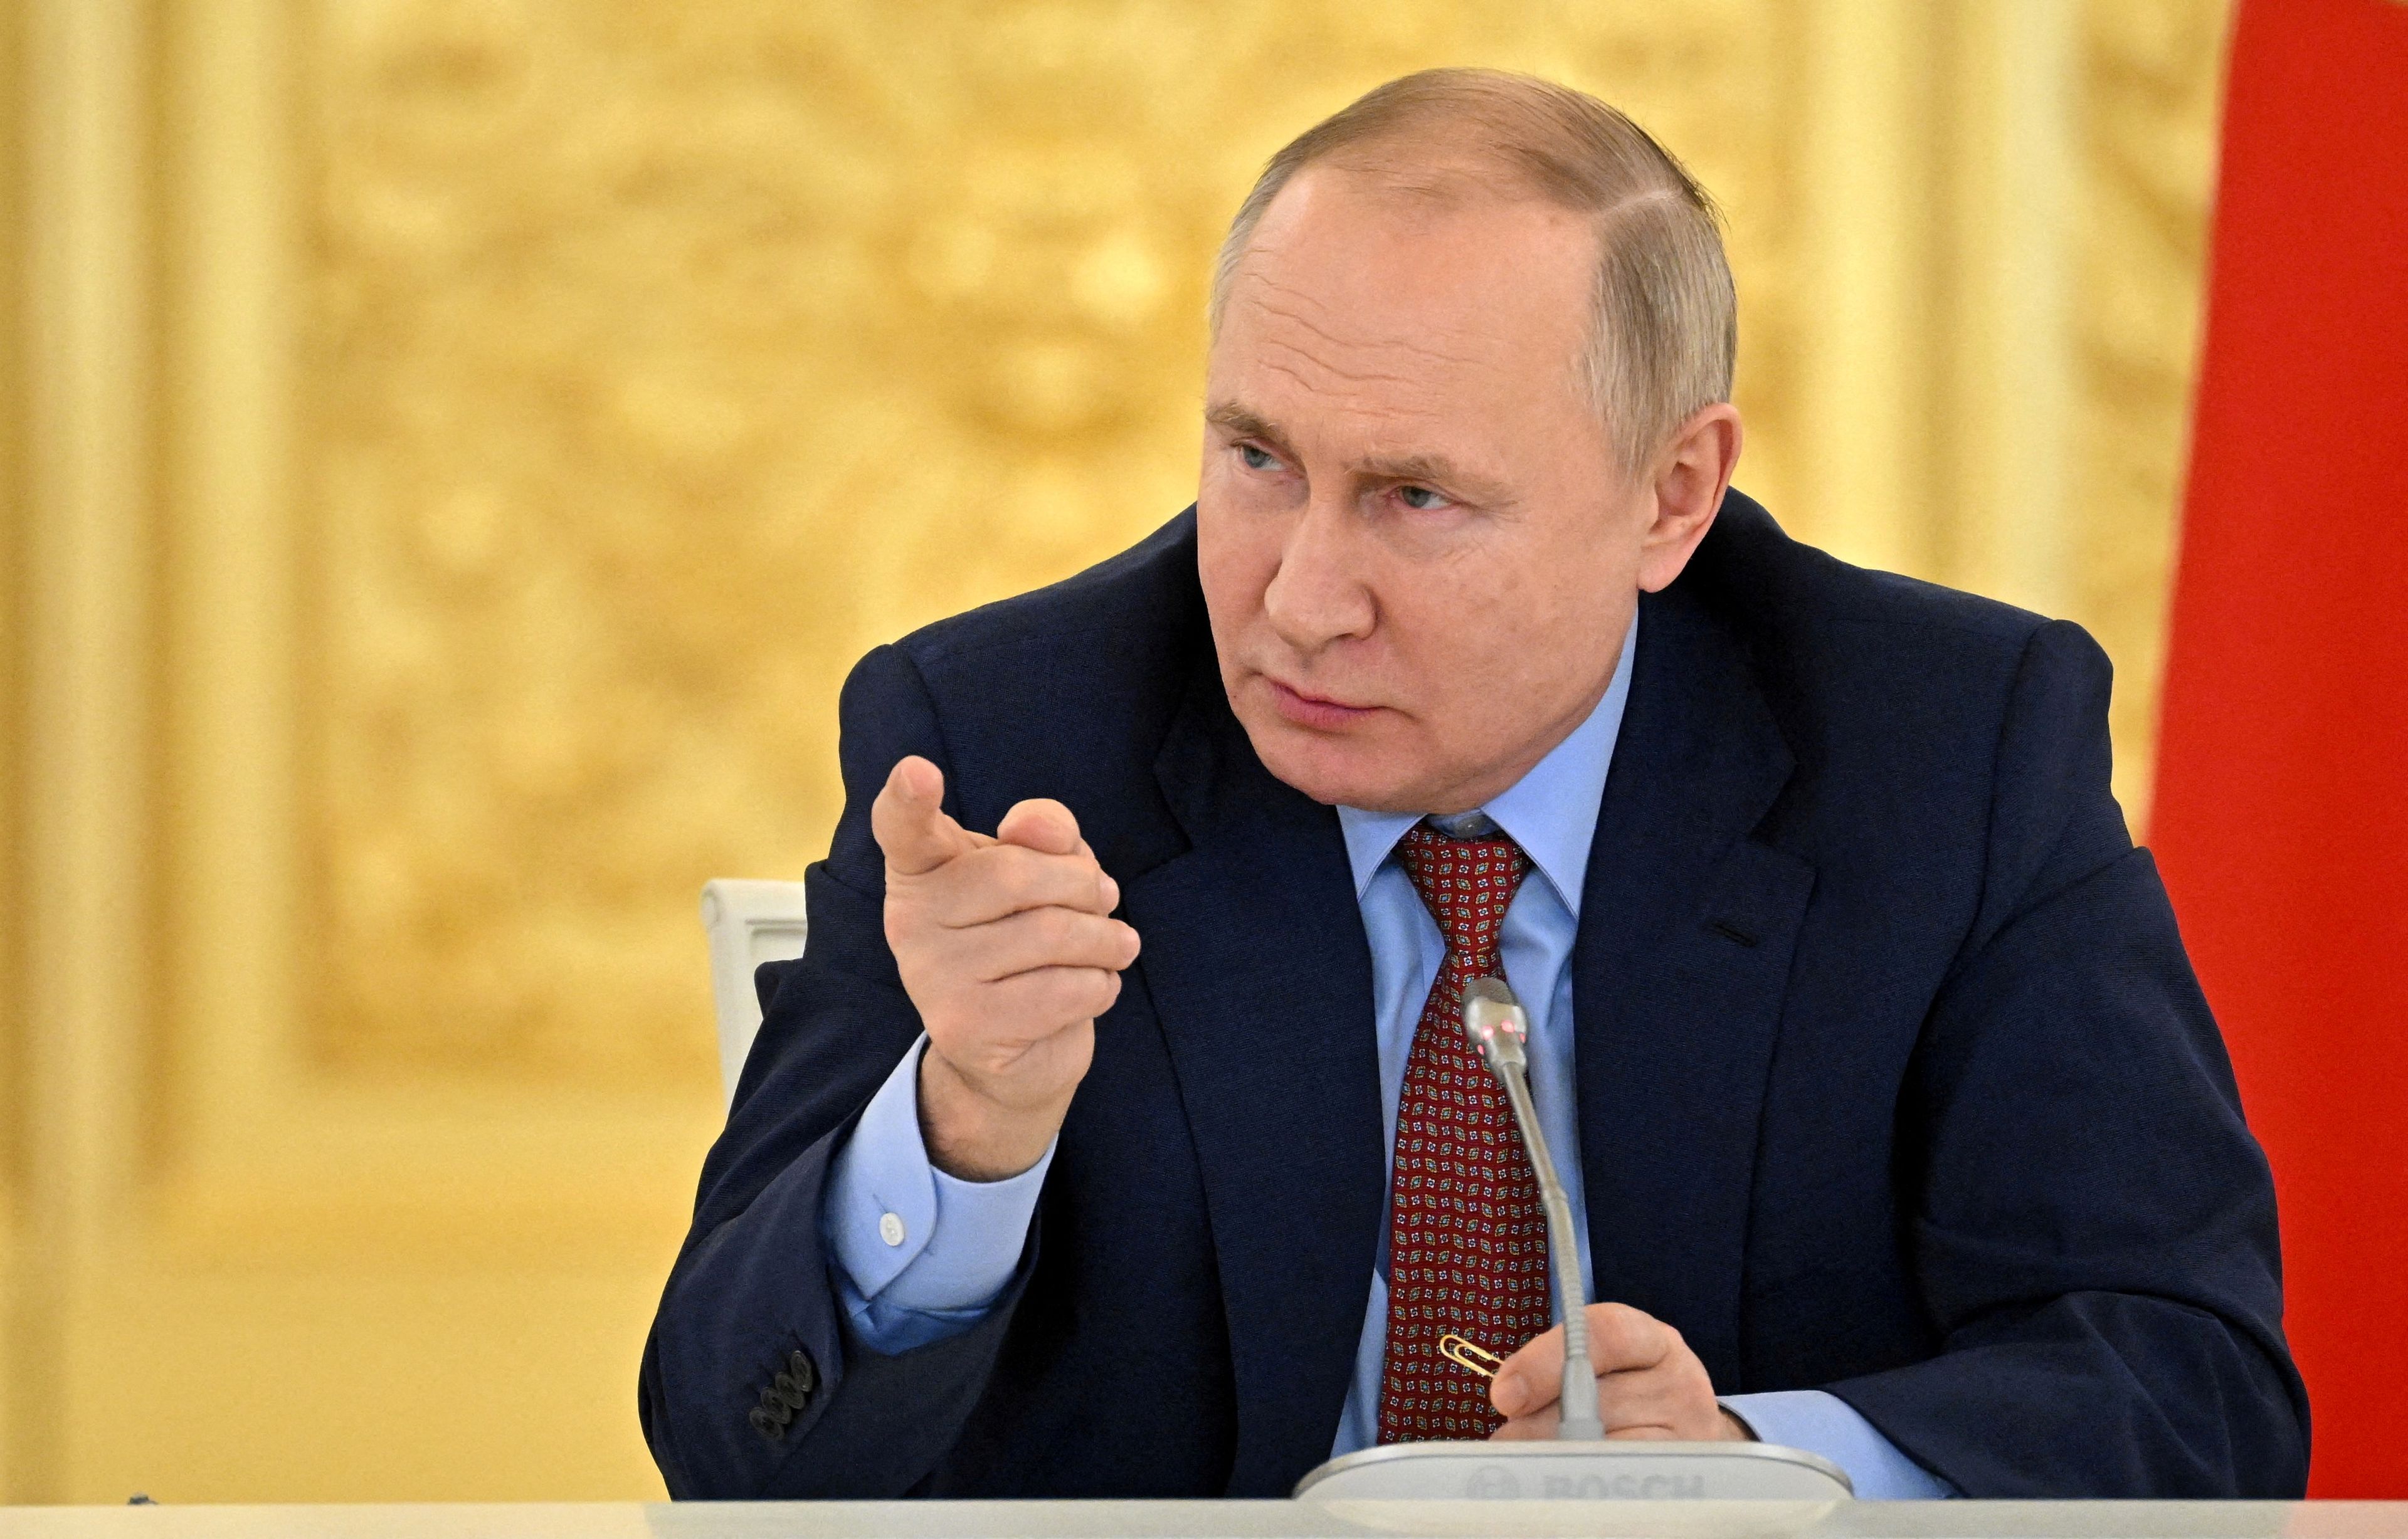 Vladímir Putin, presidente de Rusia, en una fotografía de archivo.